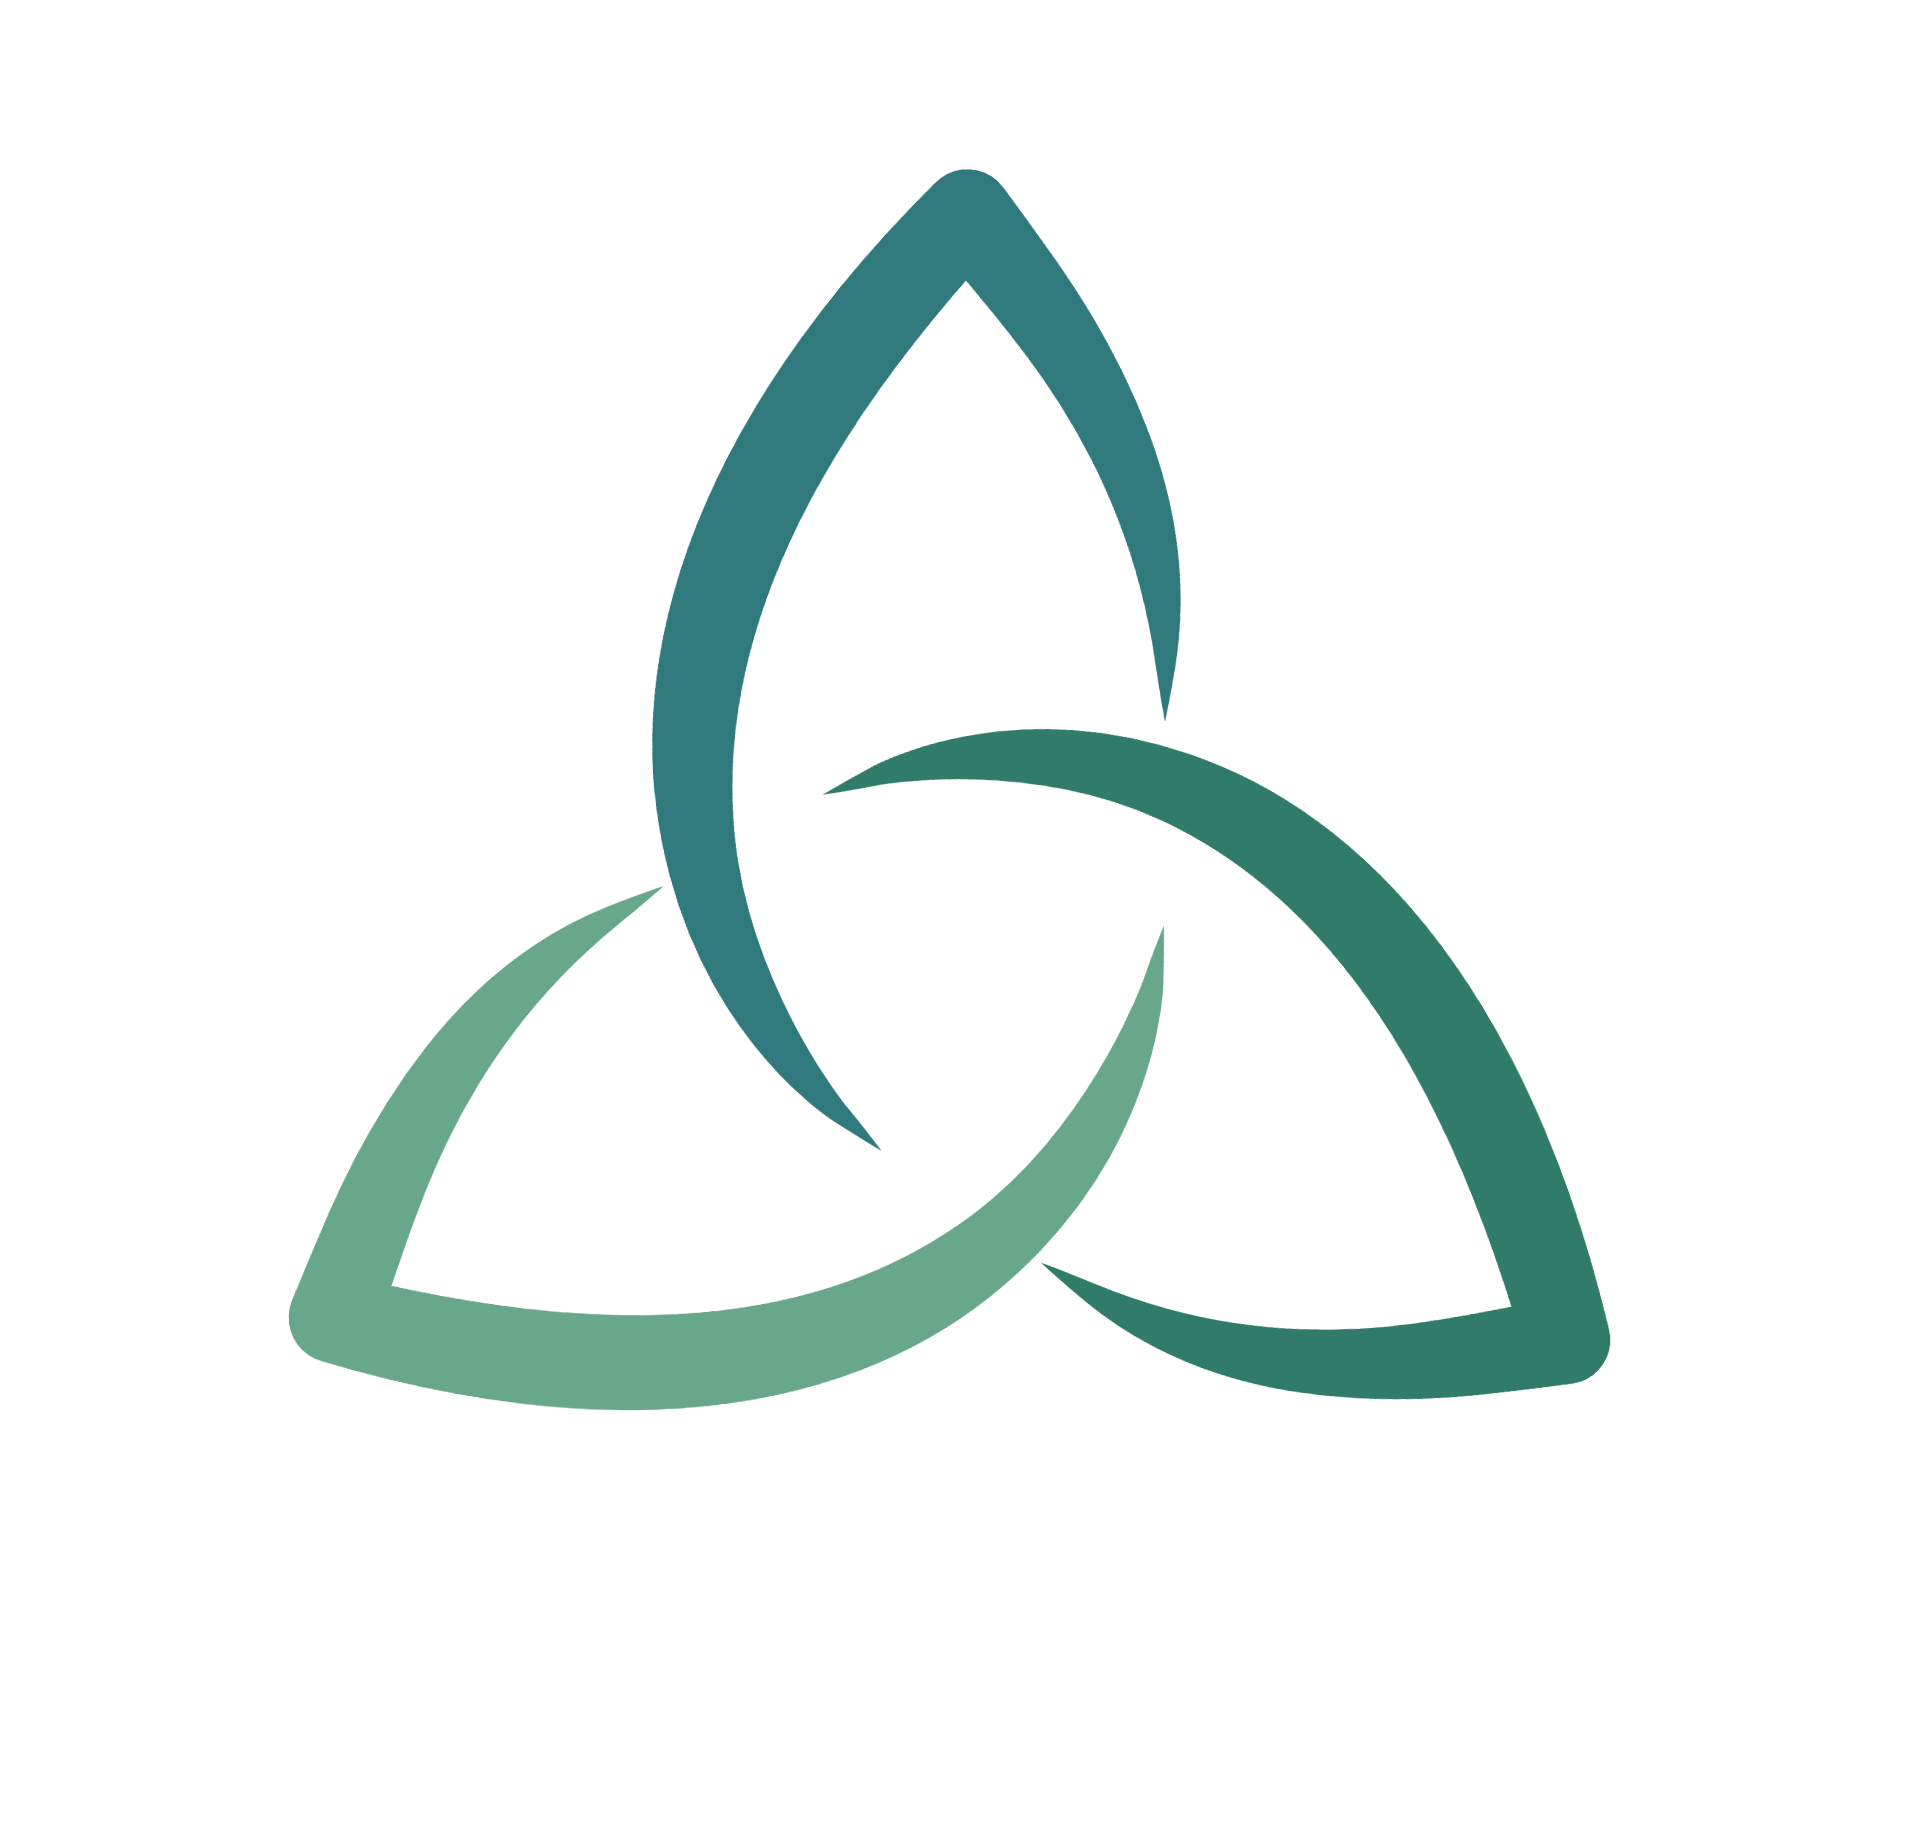 Bild Logo Heilpraxis Melis Achatz mit einem Triquetra Symbol in drei verschiedenen blau-grünen Farben